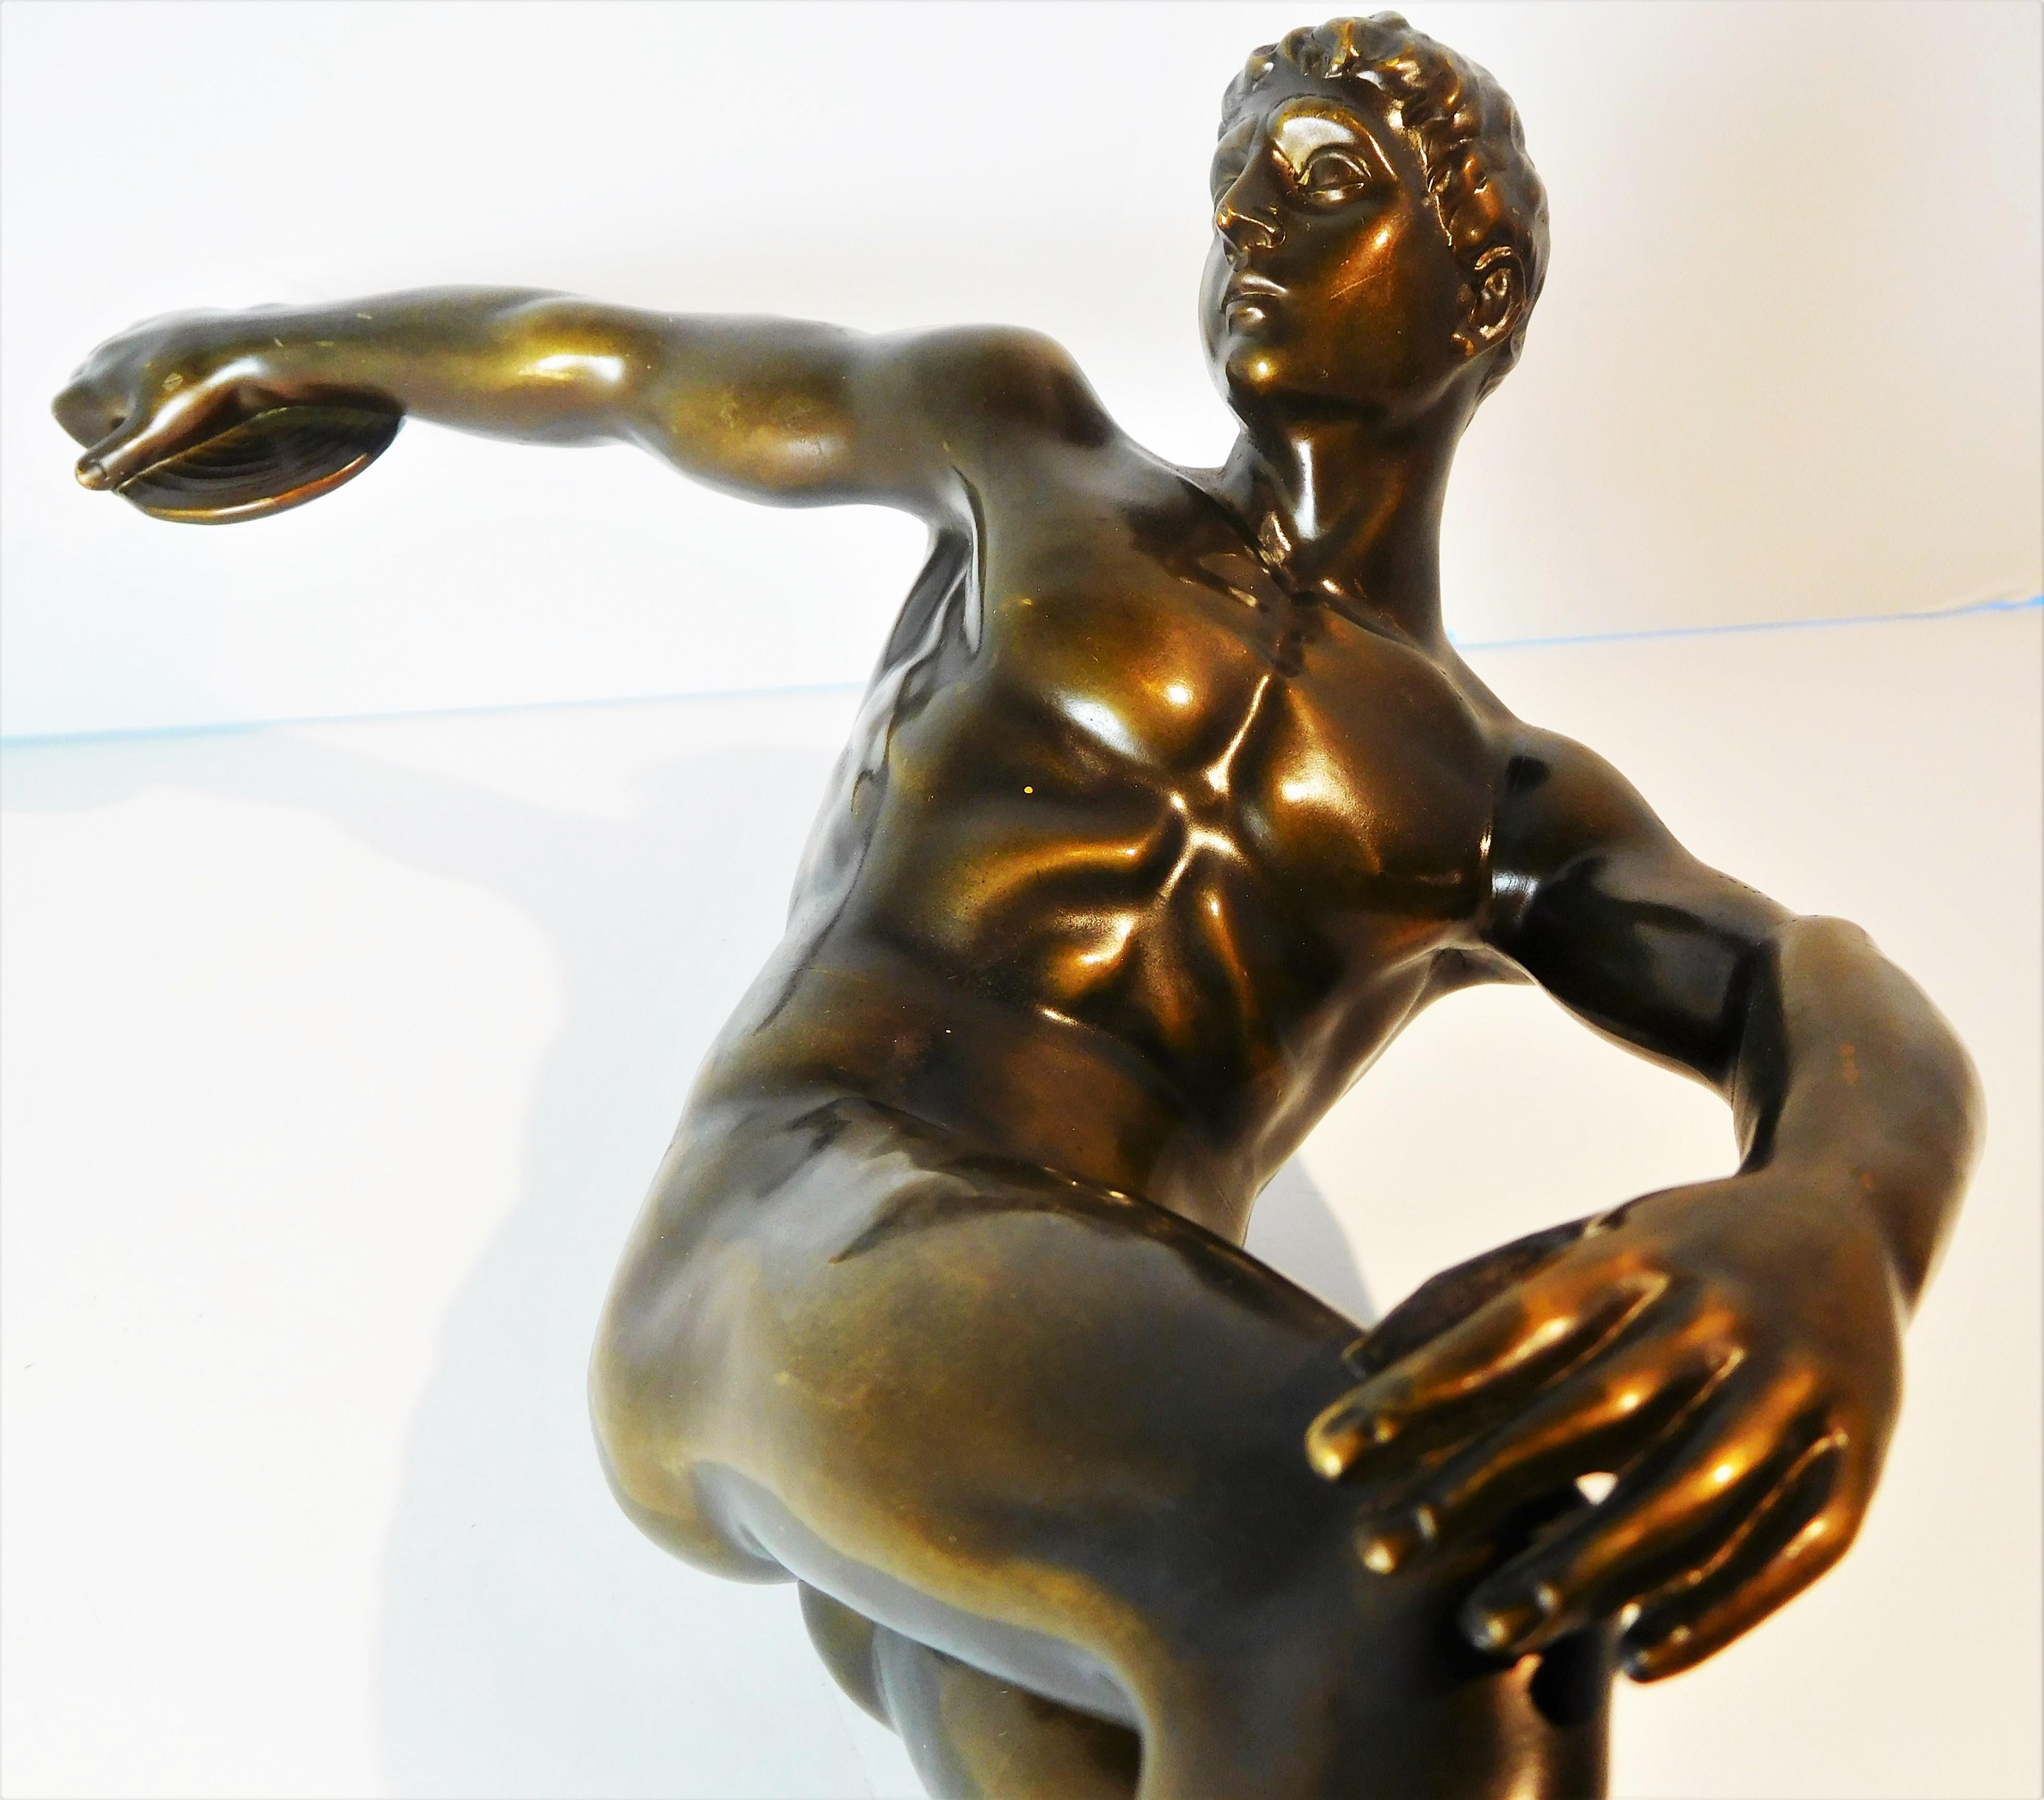 Grand Tour Souvenir Bronze Figure of Discobolus, After the Antique by Myron For Sale 14